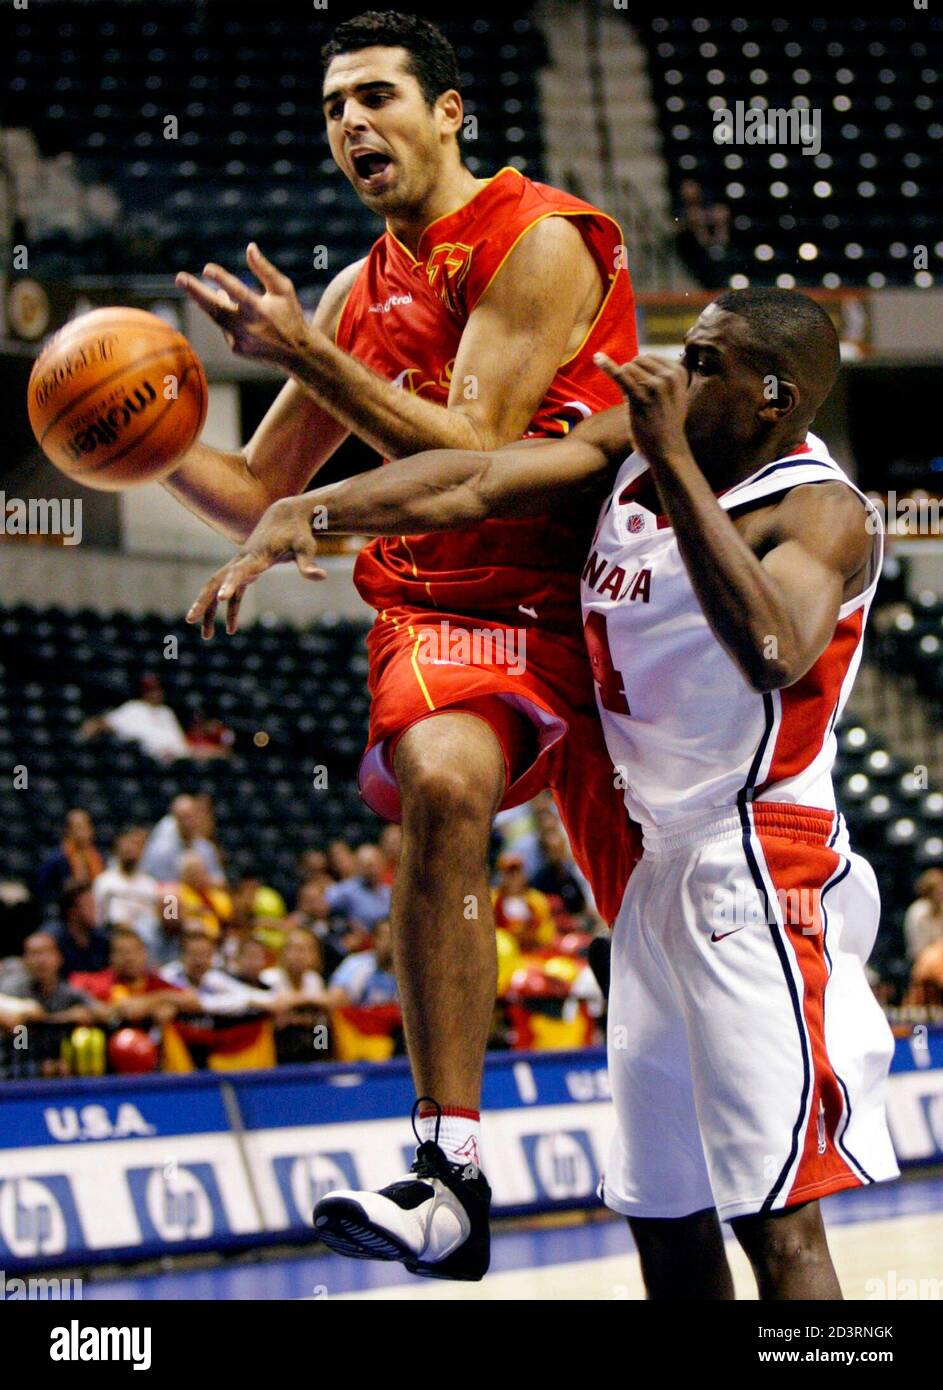 El español José Antonio Paraíso (L) se colora con el canadiense Novell  Thomas (R) durante el cuarto período de acción en el Campeonato Mundial de Baloncesto  2002 en Indianápolis, Indiana, 29 de